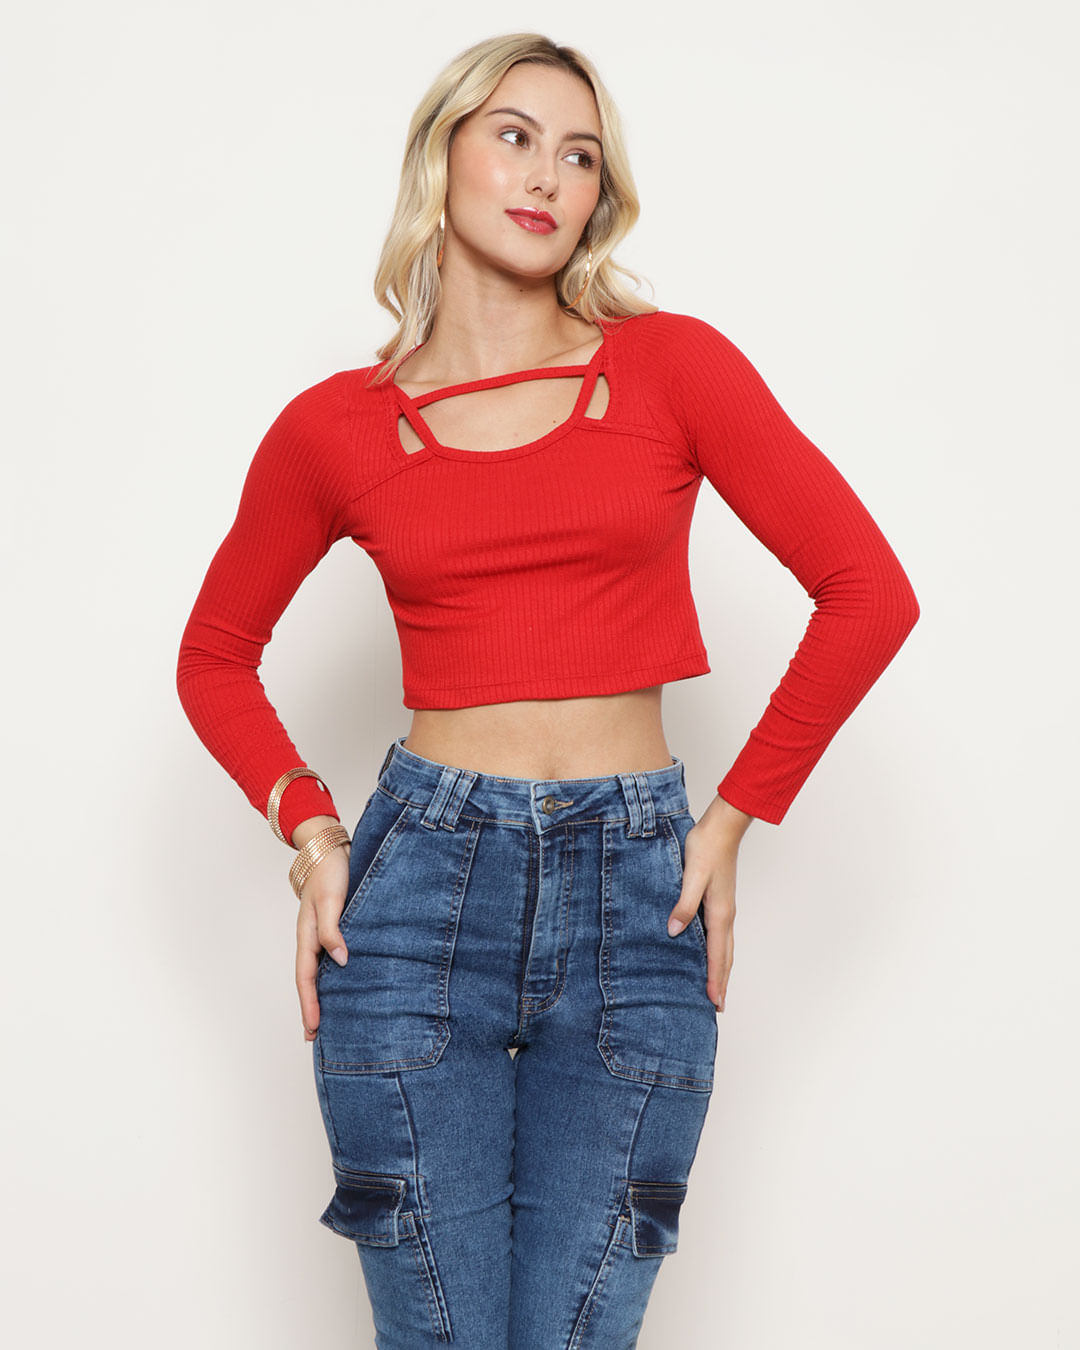 Blusa-Cropped-Feminina-Decote-Vazado-Canelada-Vermelha